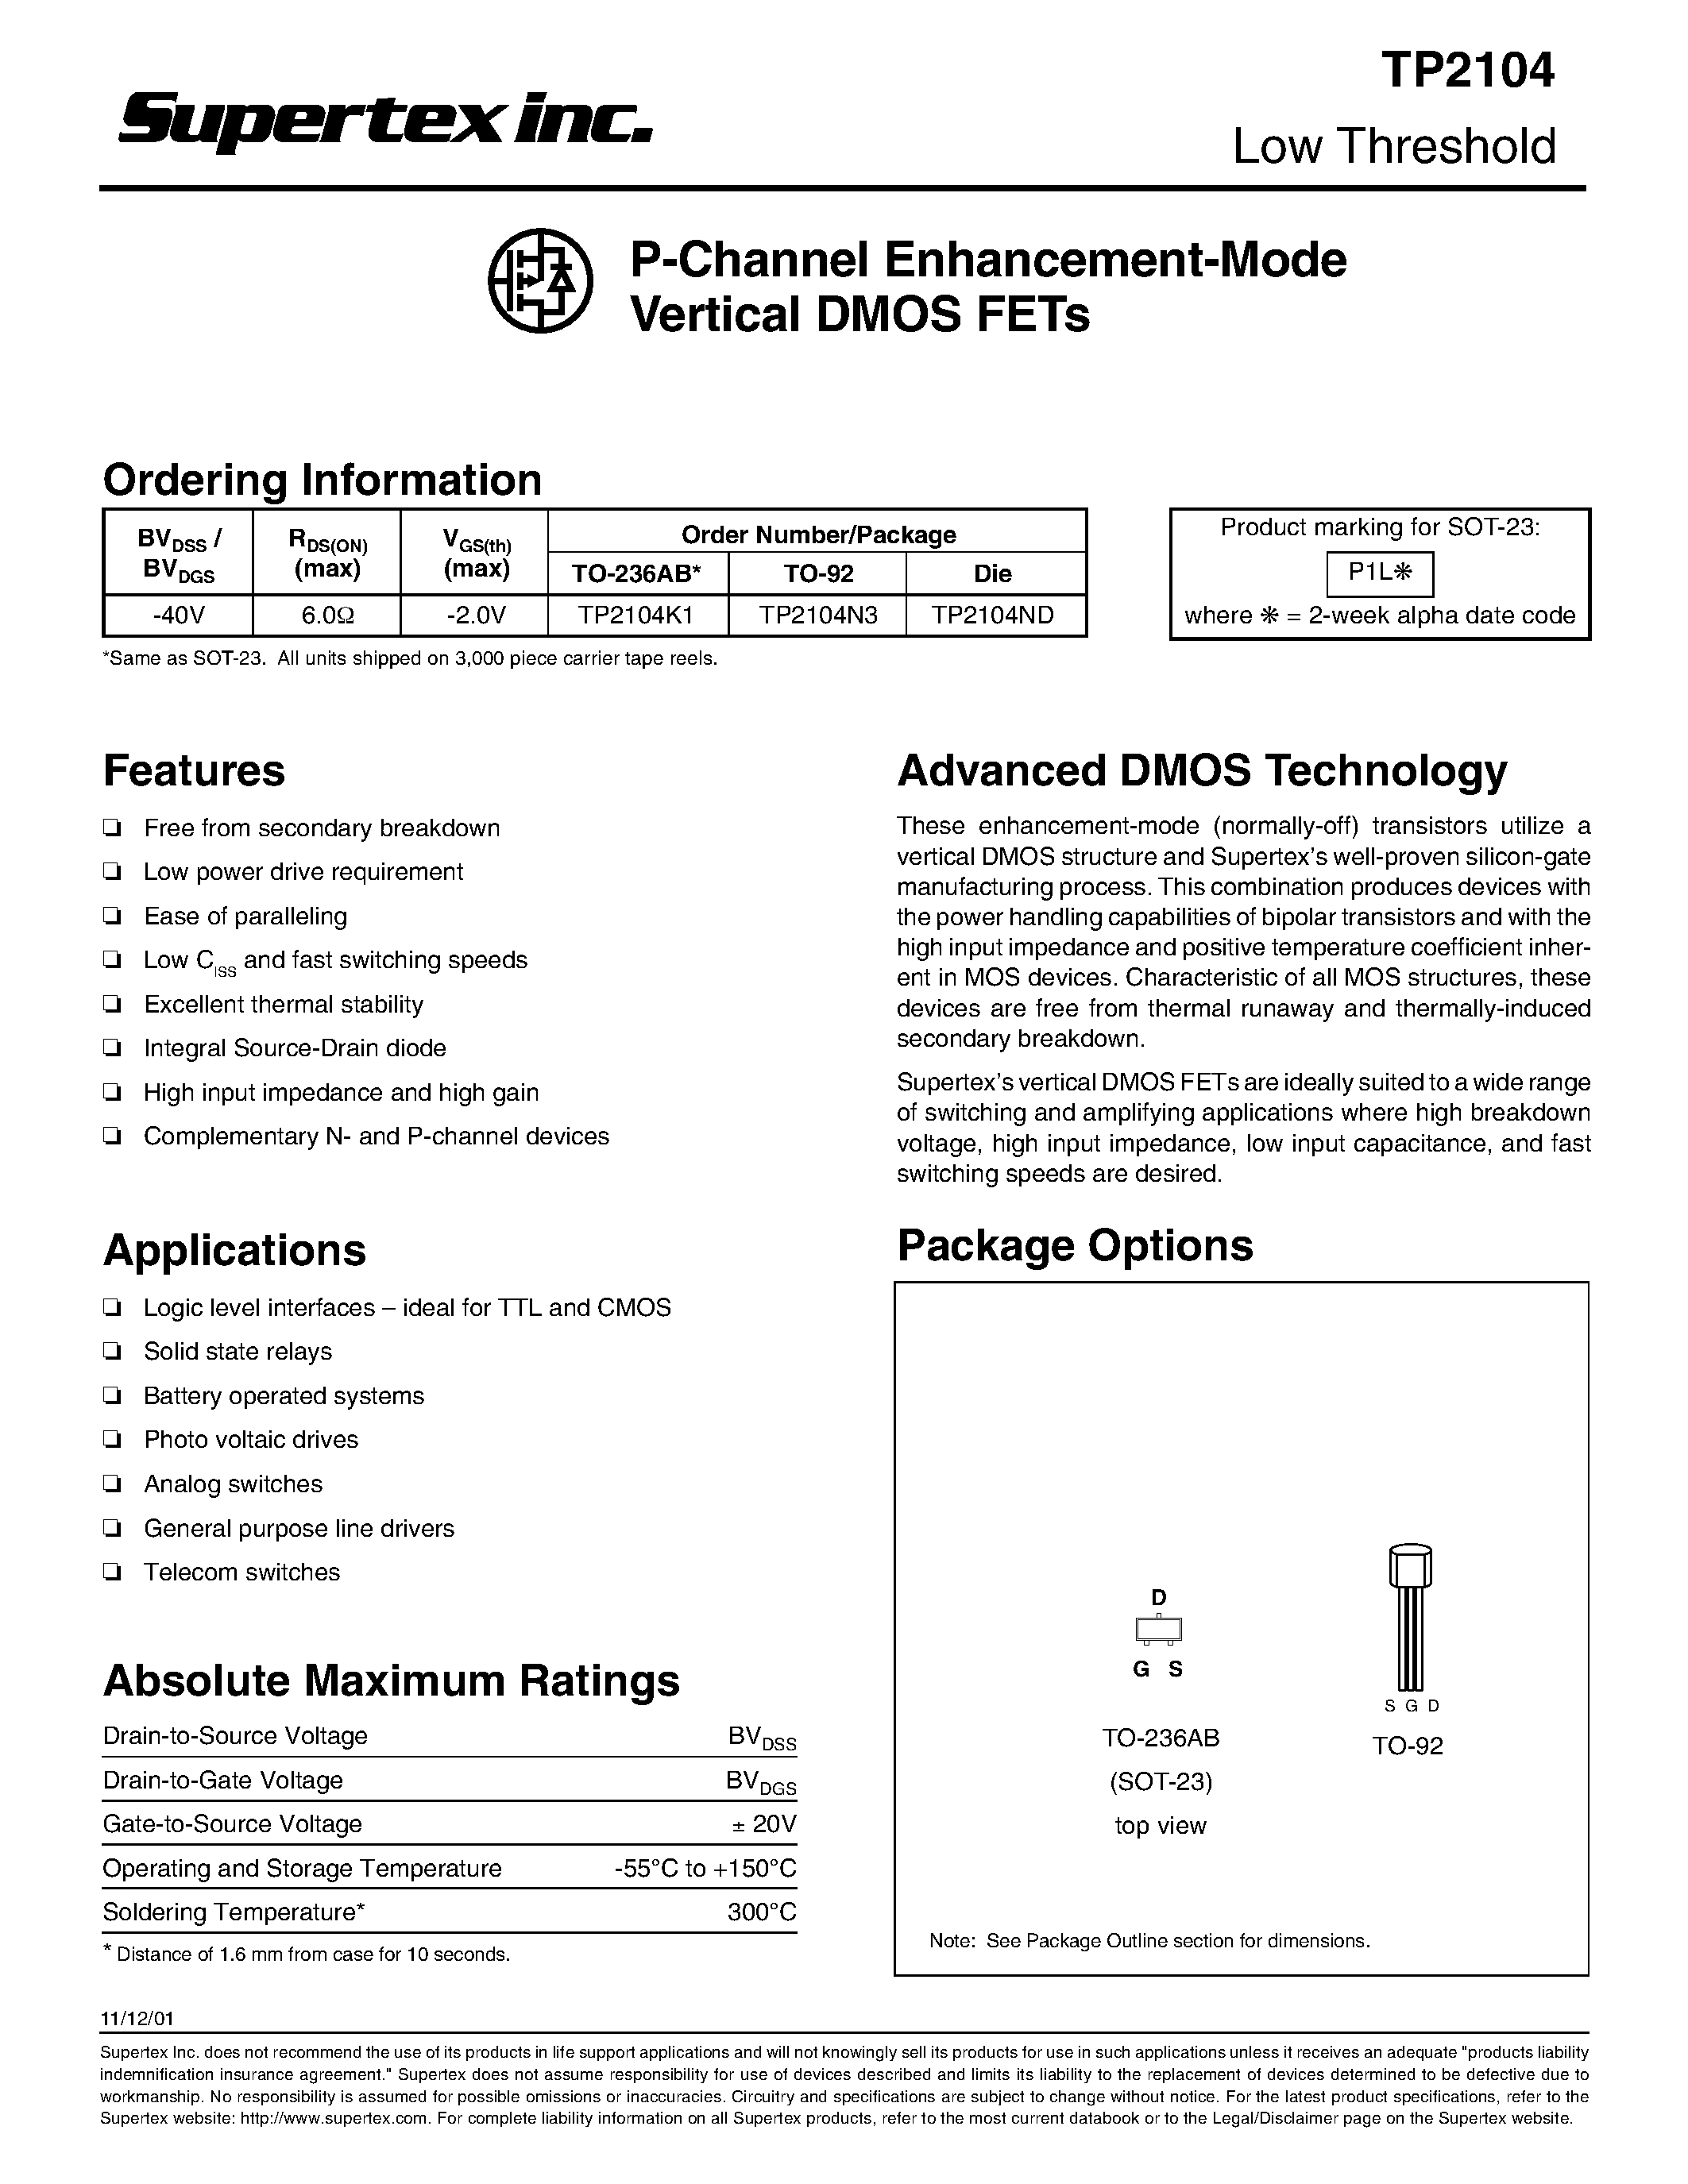 Datasheet TP2104K1 - P-Channel Enhancement-Mode Vertical DMOS FETs page 1